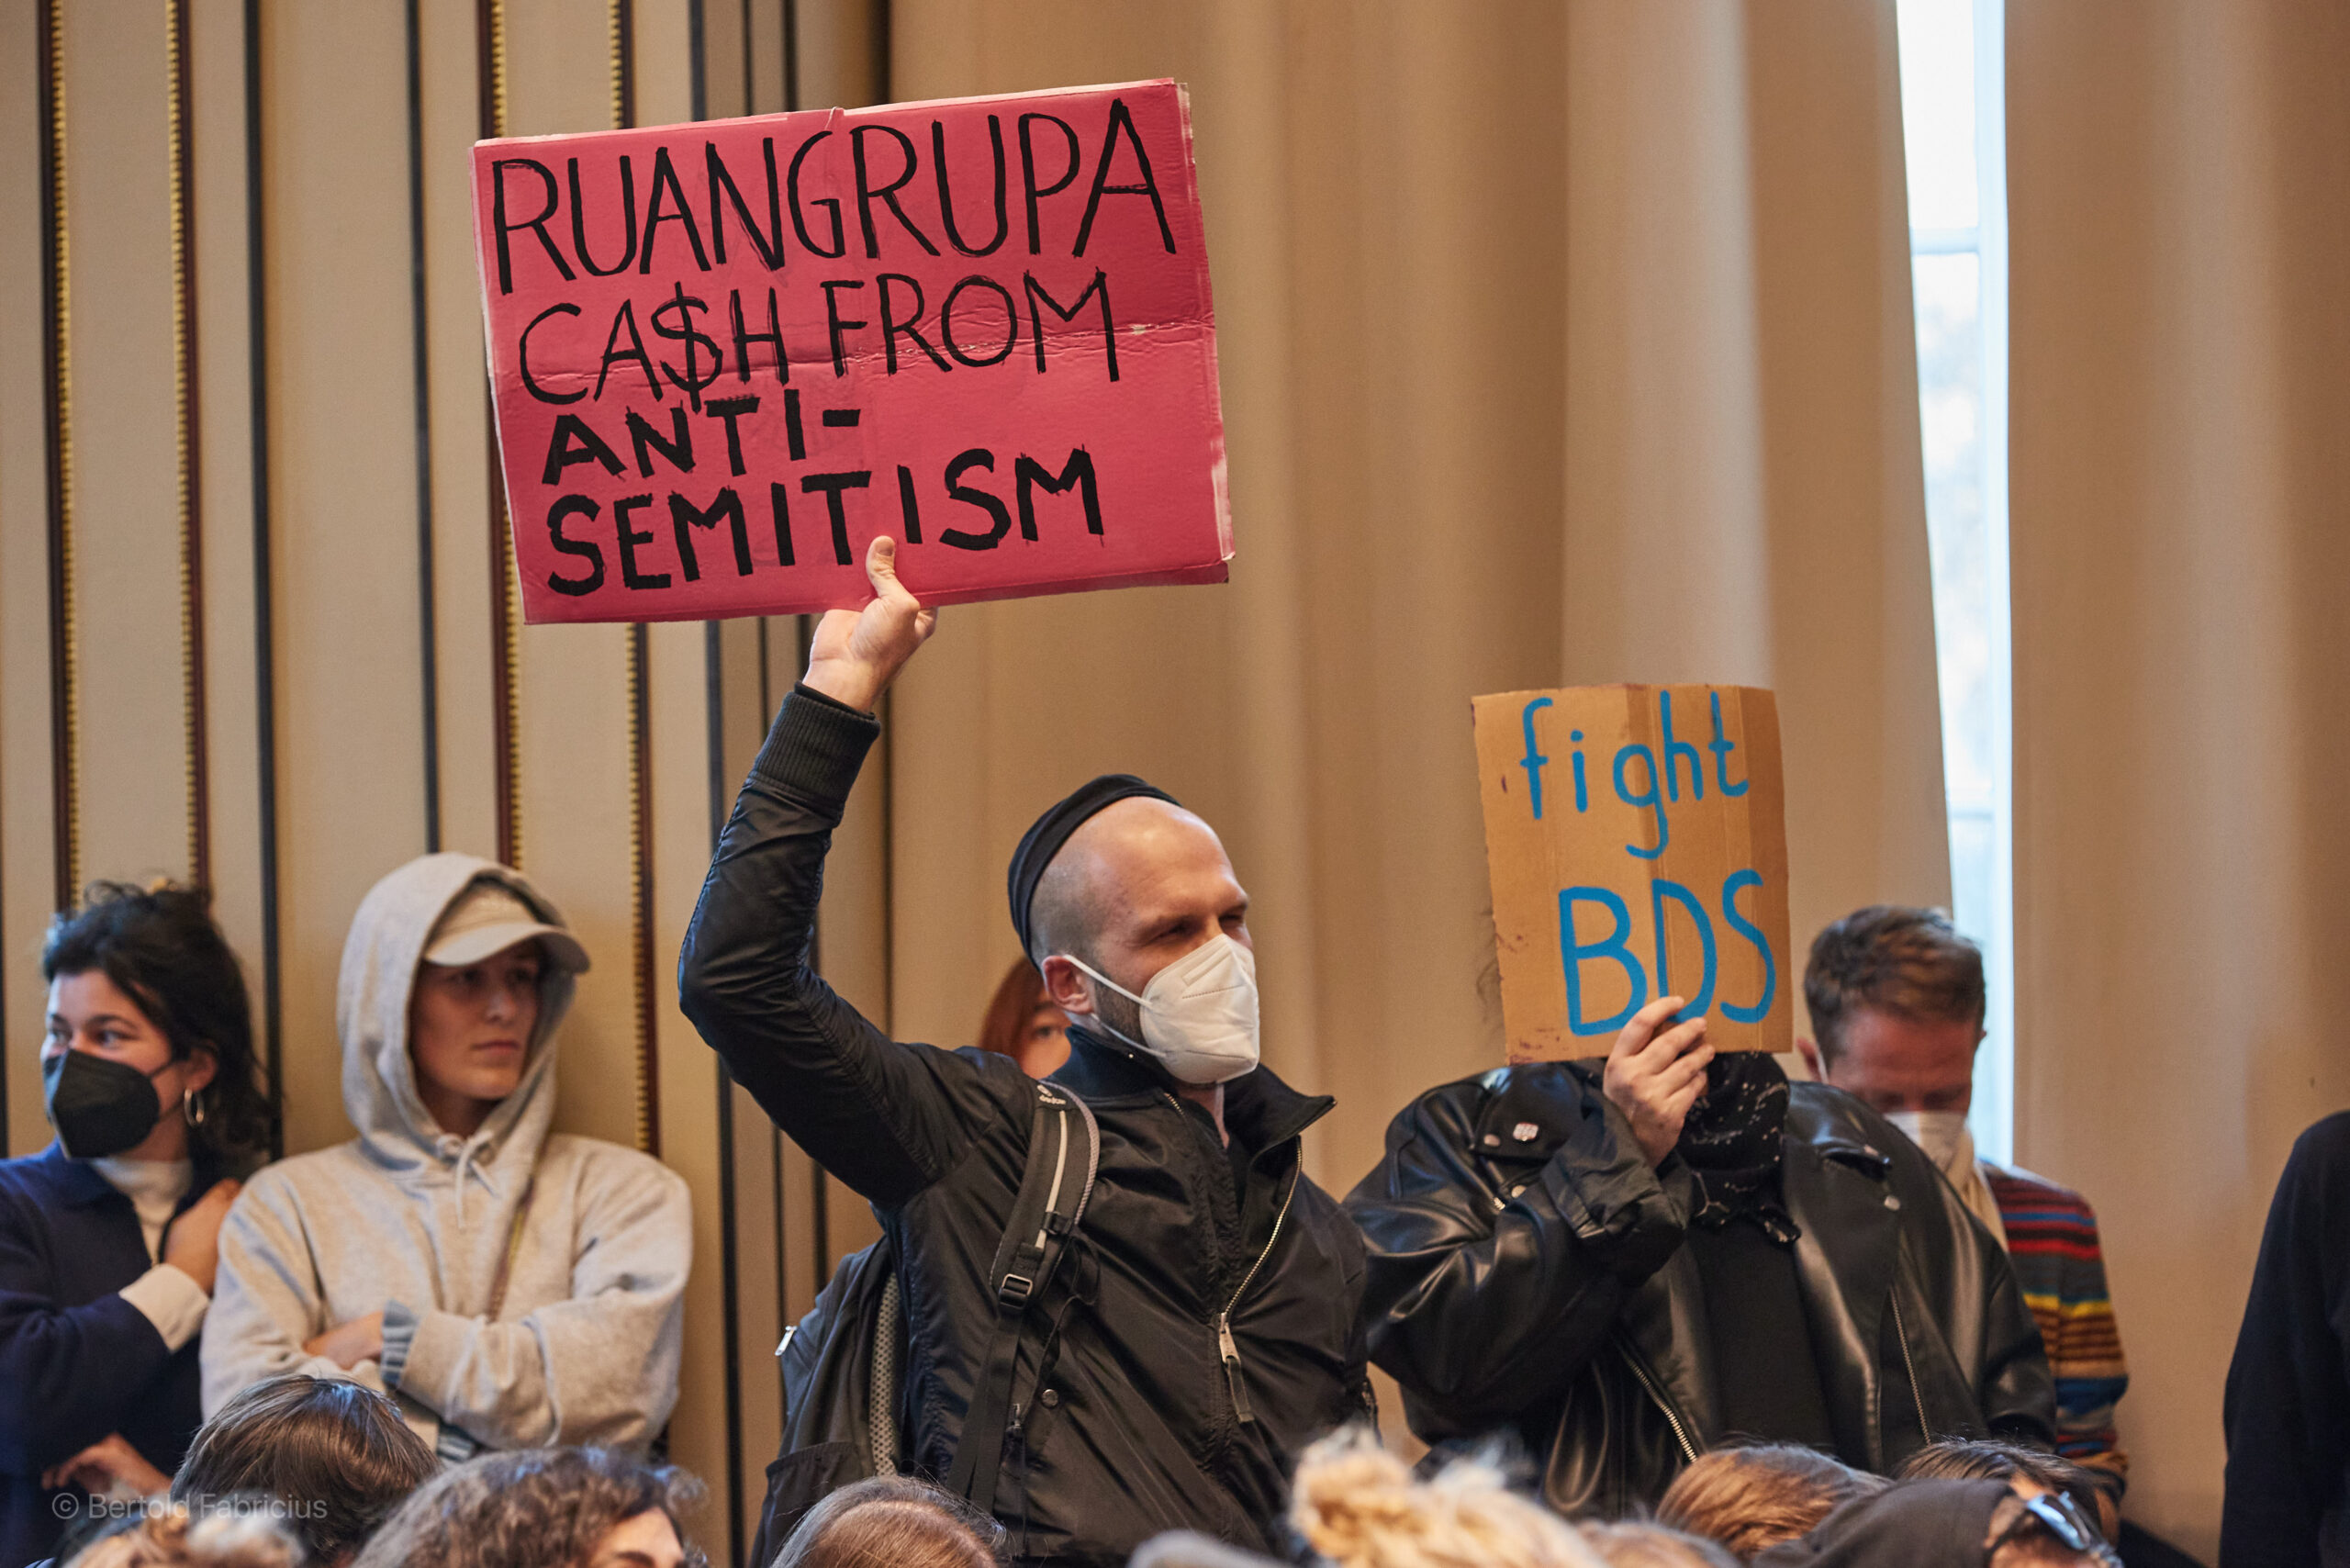 Protestierende halten in der Aula der HFBK Transparente mit der Aufschrift „Ruangrupa Ca$h From Antisemitism“ und „Fight BDS“ hoch.